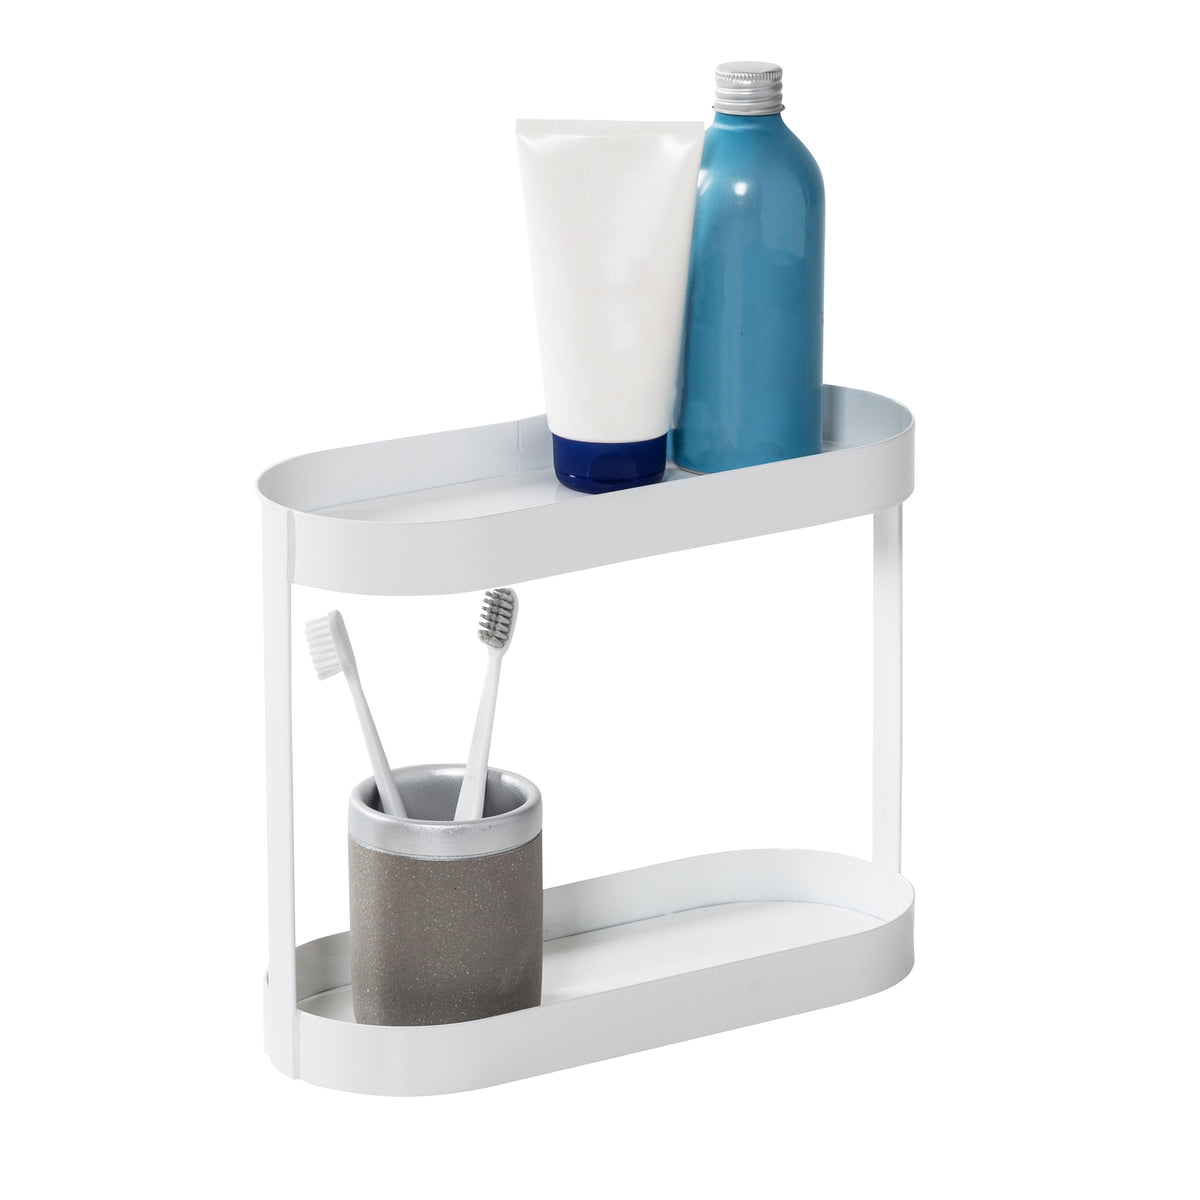 USHARP Bathroom Counter Organizer Rack with Toiletries Basket,2 Tier Stainless Steel Toothpaste Holder Bathroom Accessories Organizer,Corner Storage